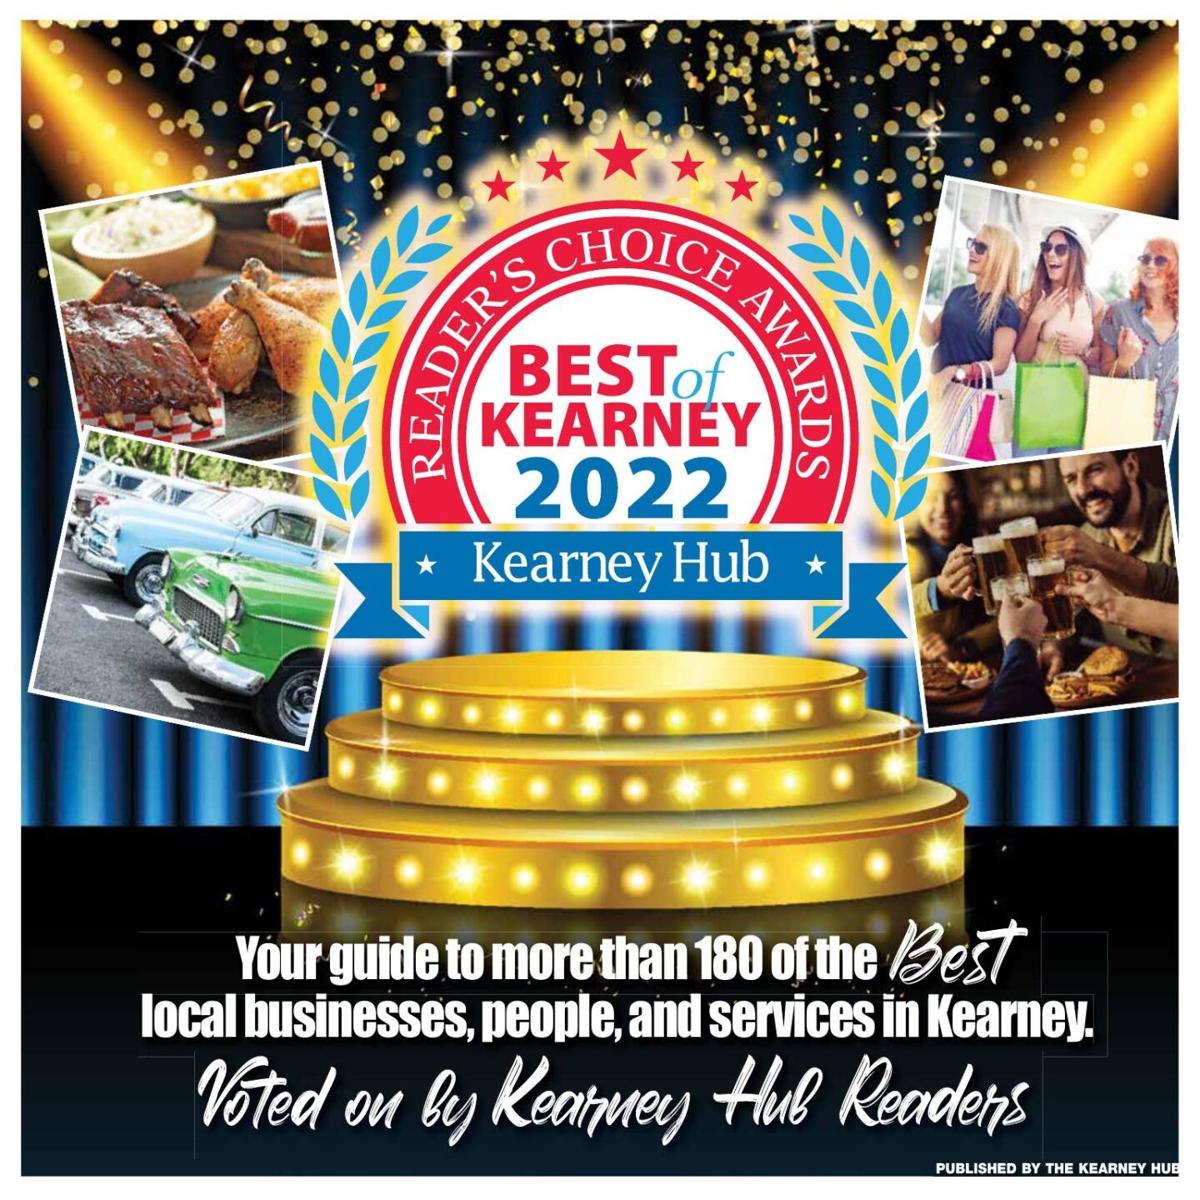 Best of Kearney 2022